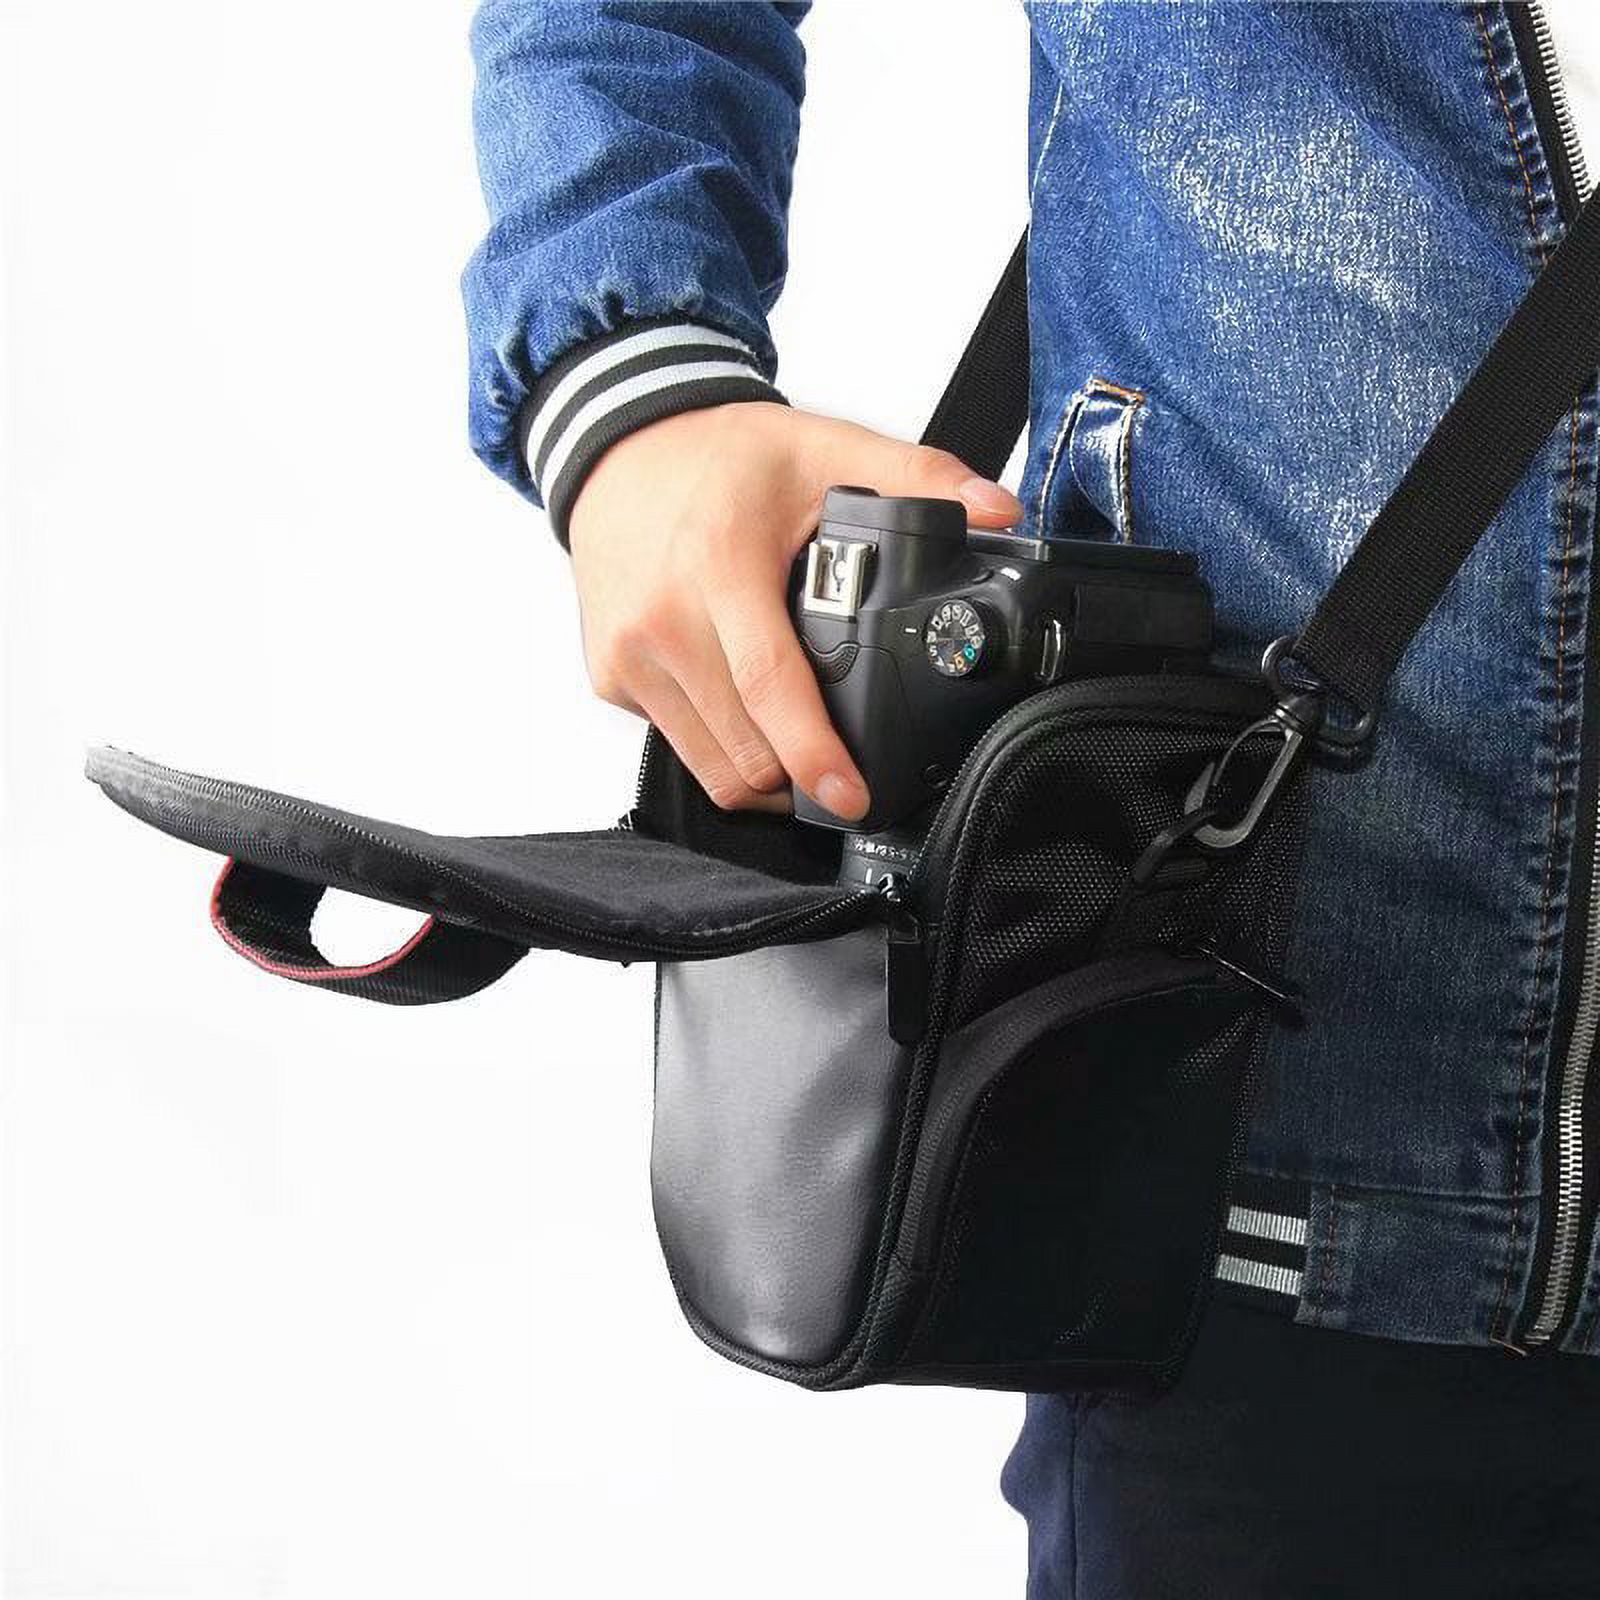 Waterproof Shockproof DSLR SLR Camera Bag Shoulder Case for Canon EOS Nikon - image 4 of 8